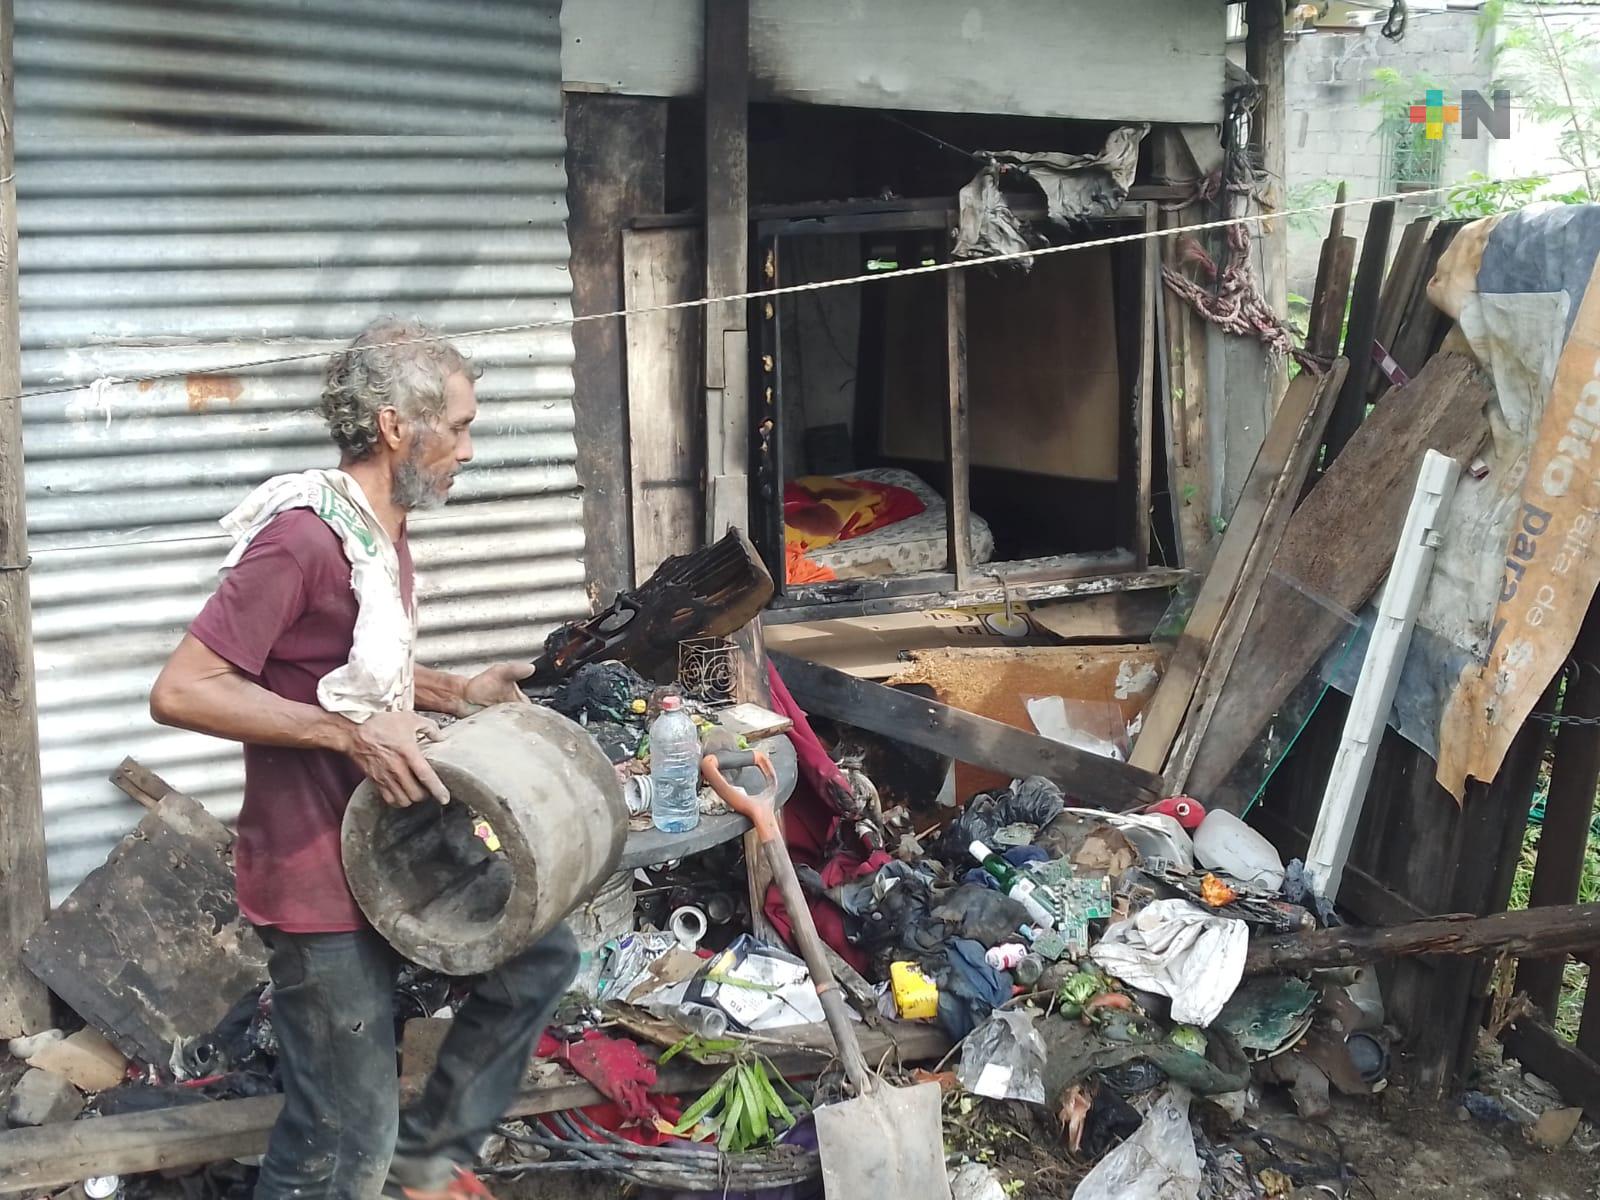 Incendio consume pertenencias de persona mayor en Veracruz puerto